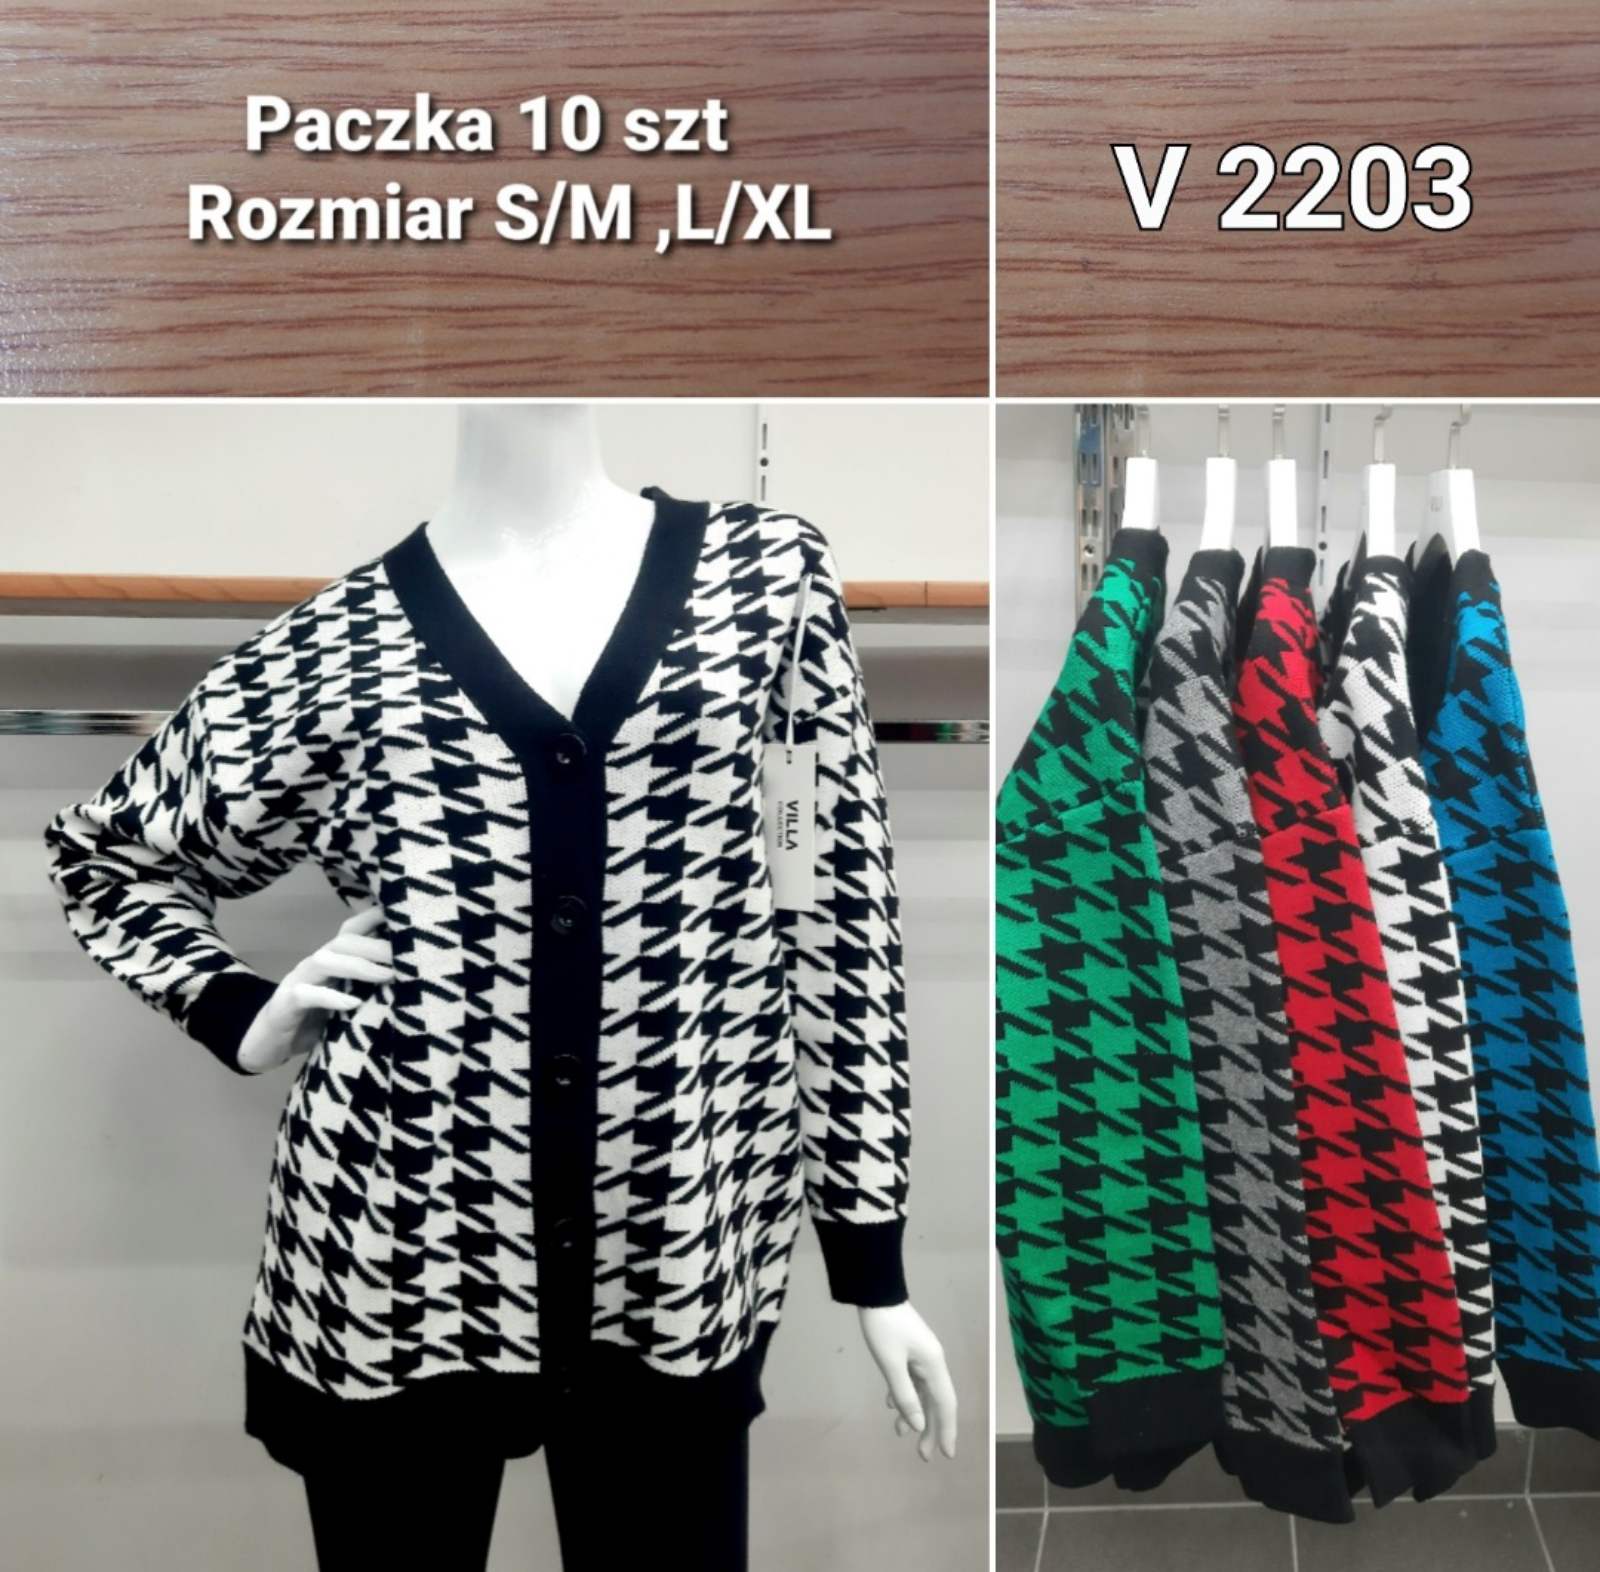 Swetry damskie Roz S/M.L/XL, Mix kolor Paczka 10szt